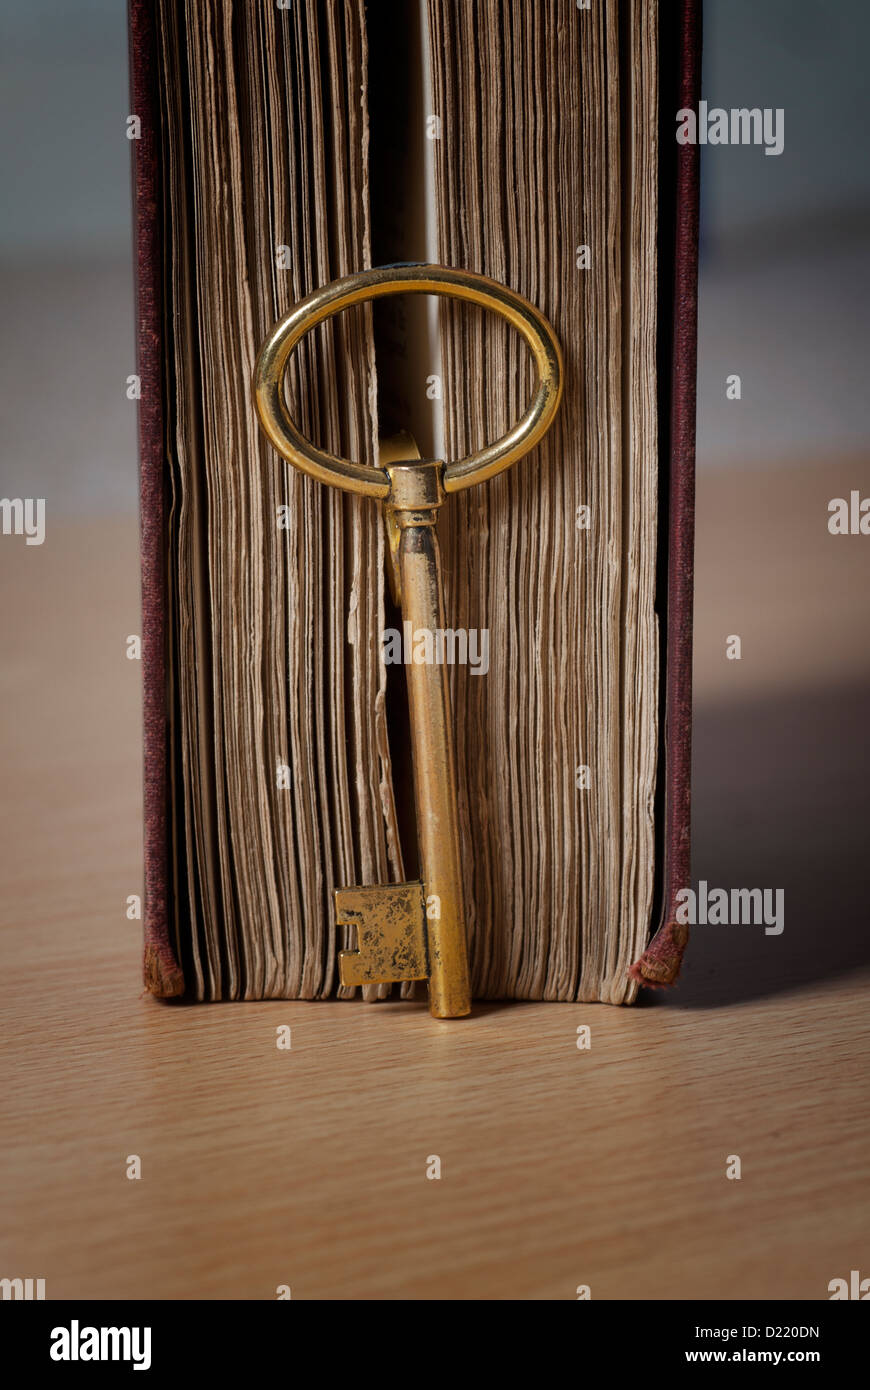 Ancienne clé dorée à côté d'un livre Banque D'Images